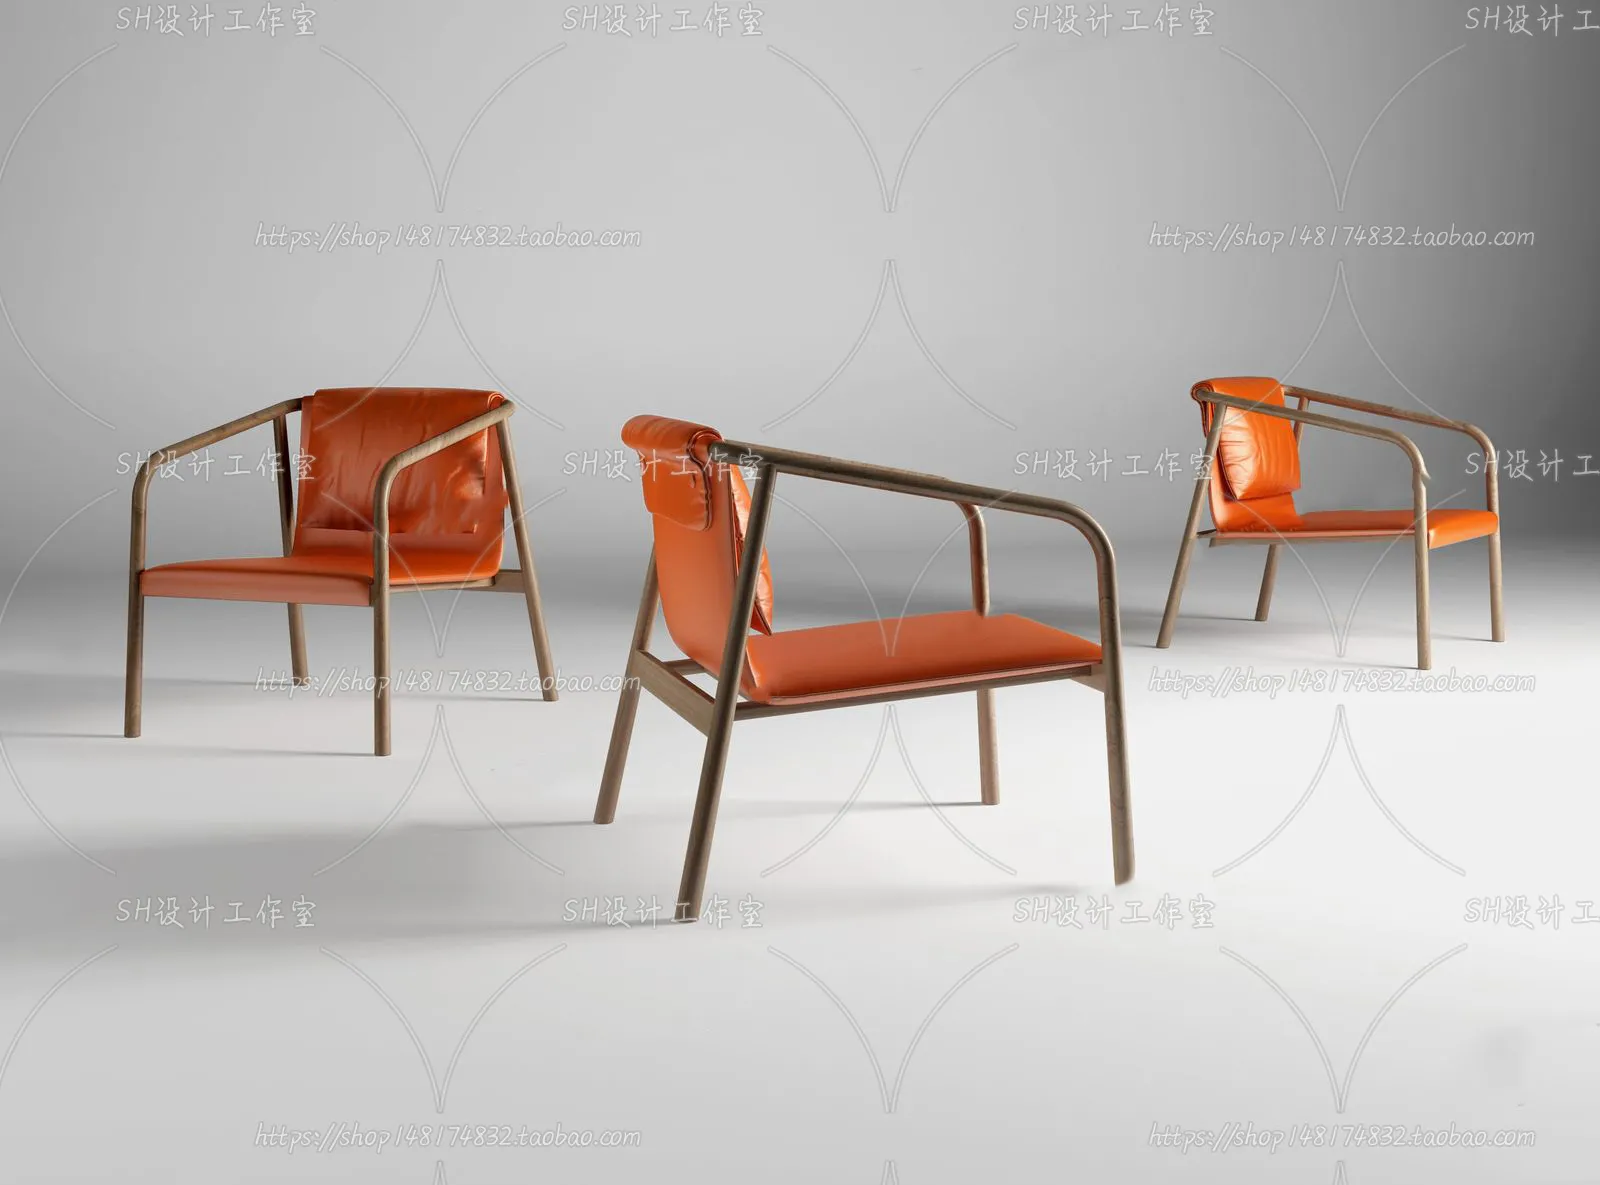 Chair – Single Chair 3D Models – 2051